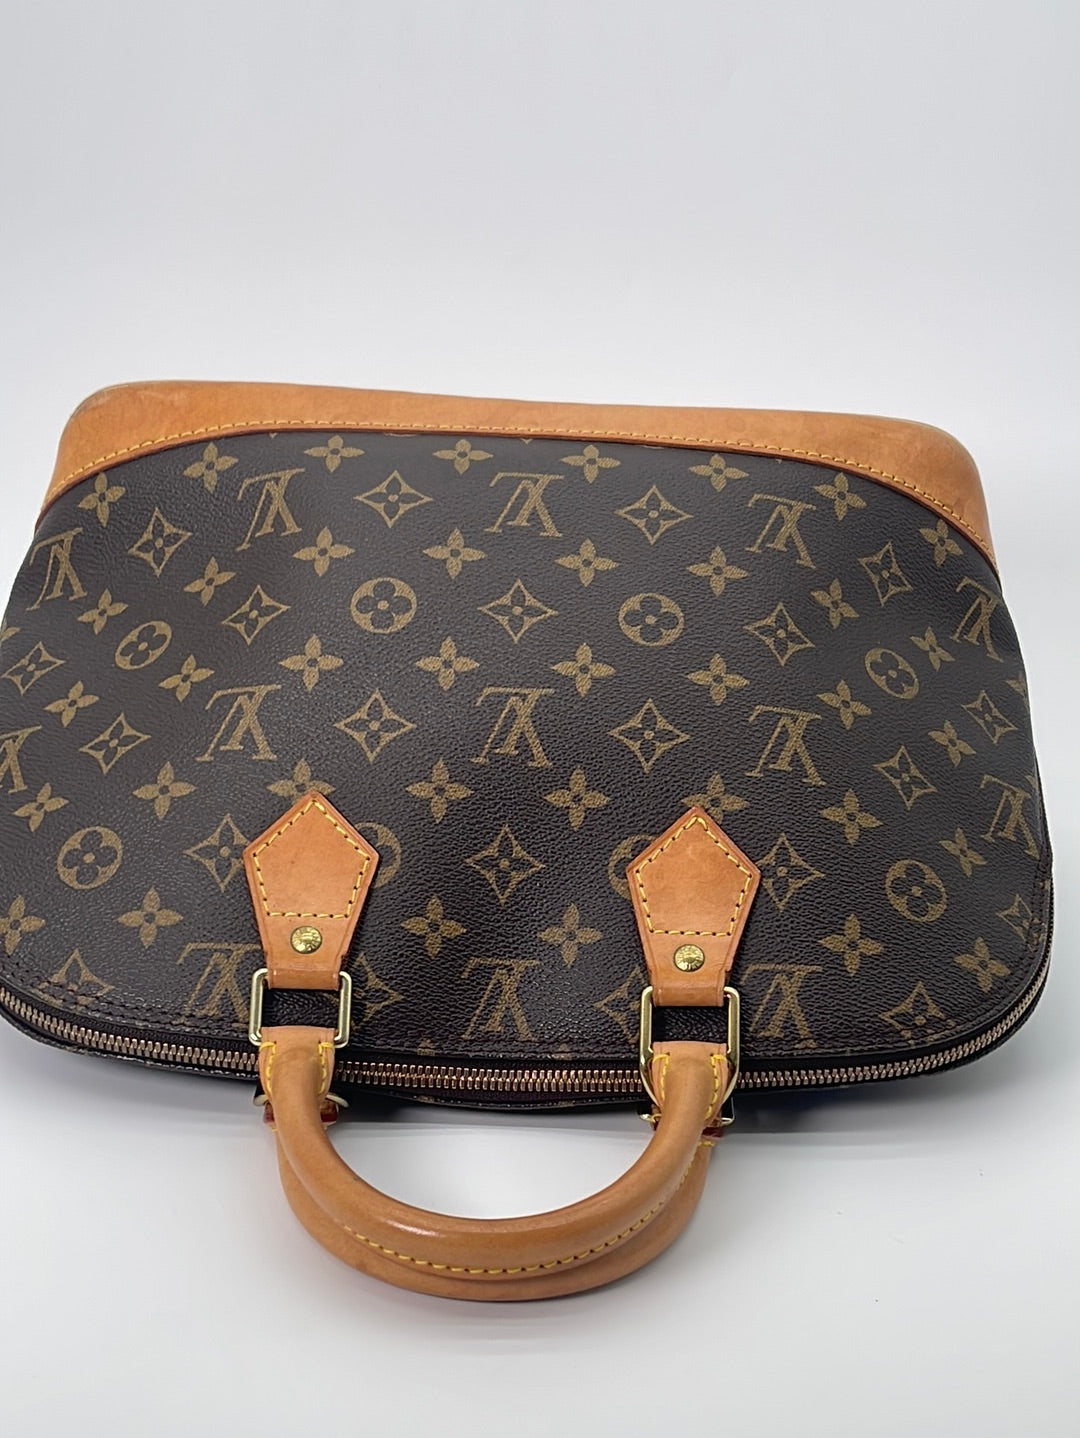 PRELOVED Louis Vuitton Alma PM Monogram Handbag VI0939 032123